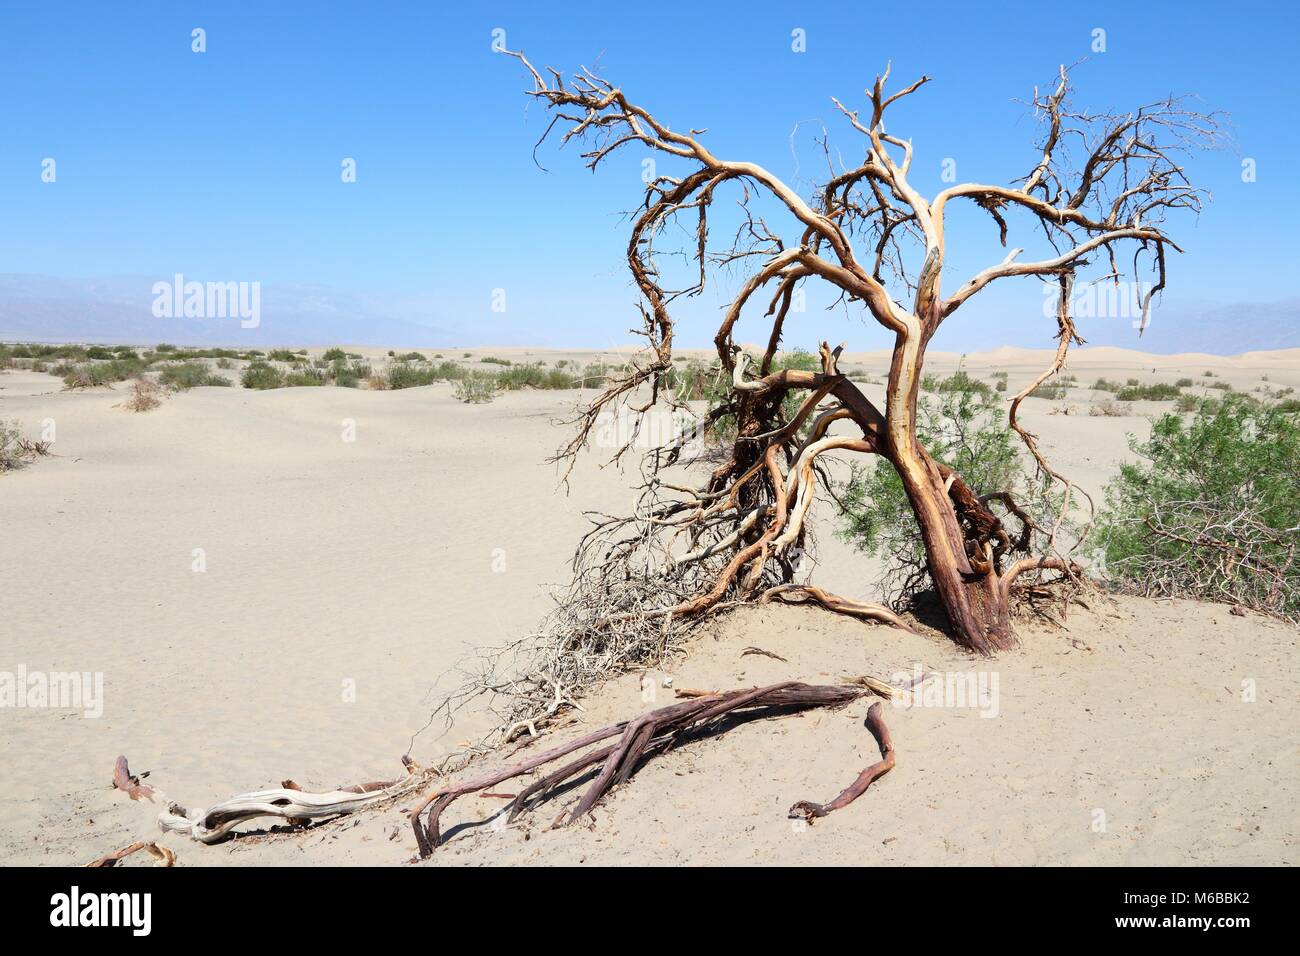 Deserto Mojave in California, Stati Uniti. Parco Nazionale della Valle della Morte (Contea di Inyo) - deserto sabbioso con albero morto. Foto Stock